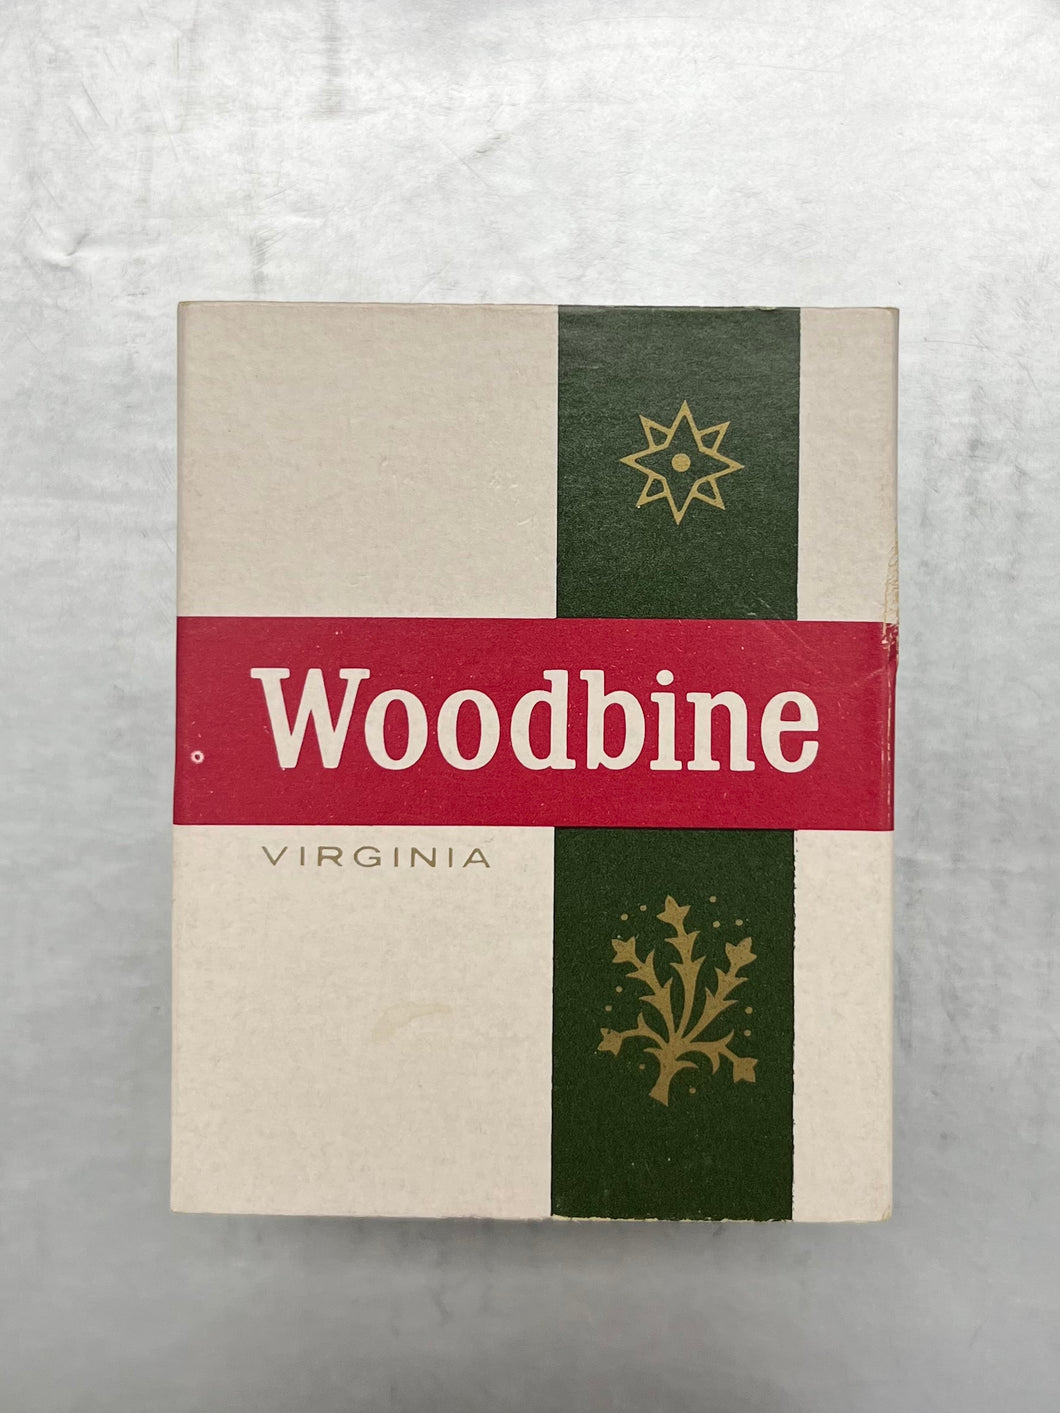 Woodbine Virginia Cigarette Packet